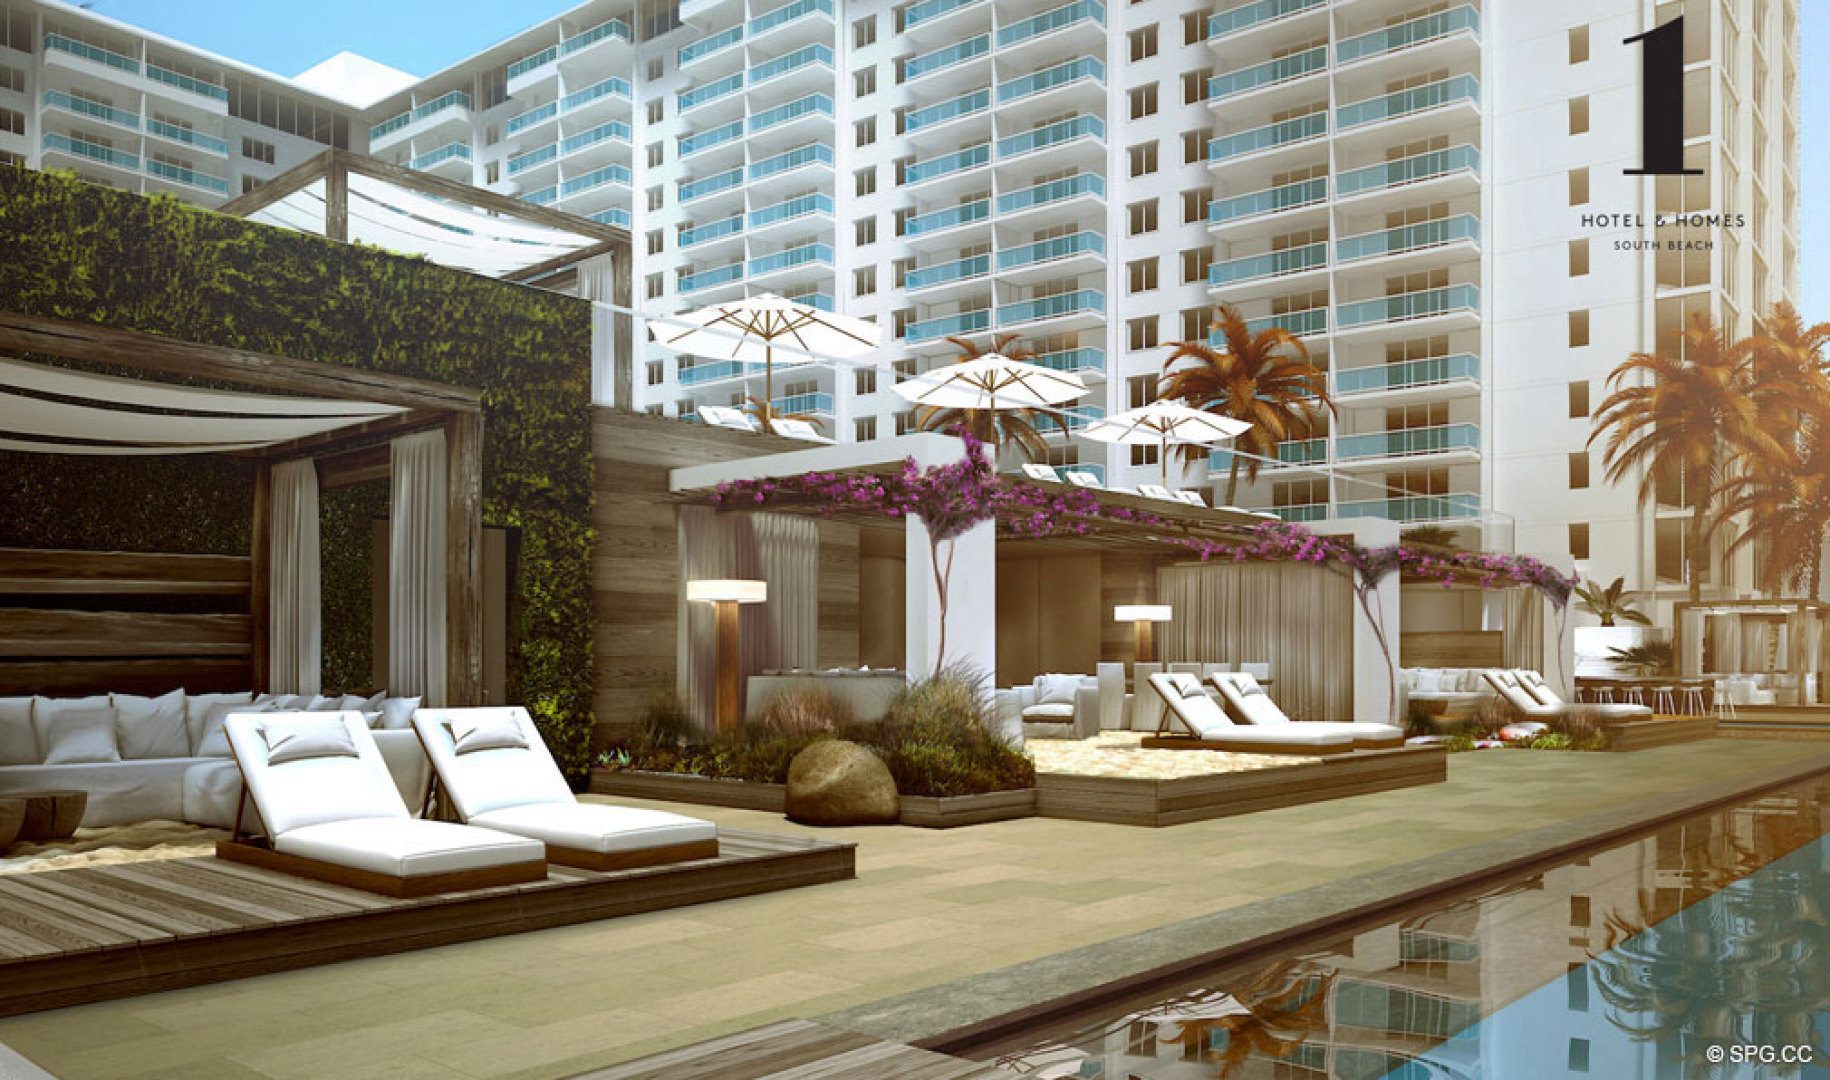 Cabanas à beira da piscina em um Hotel & Homes, South Beach Oceanfront Luxury Condominiums Localizado na 2399 Collins Ave, Miami Beach, FL 33139